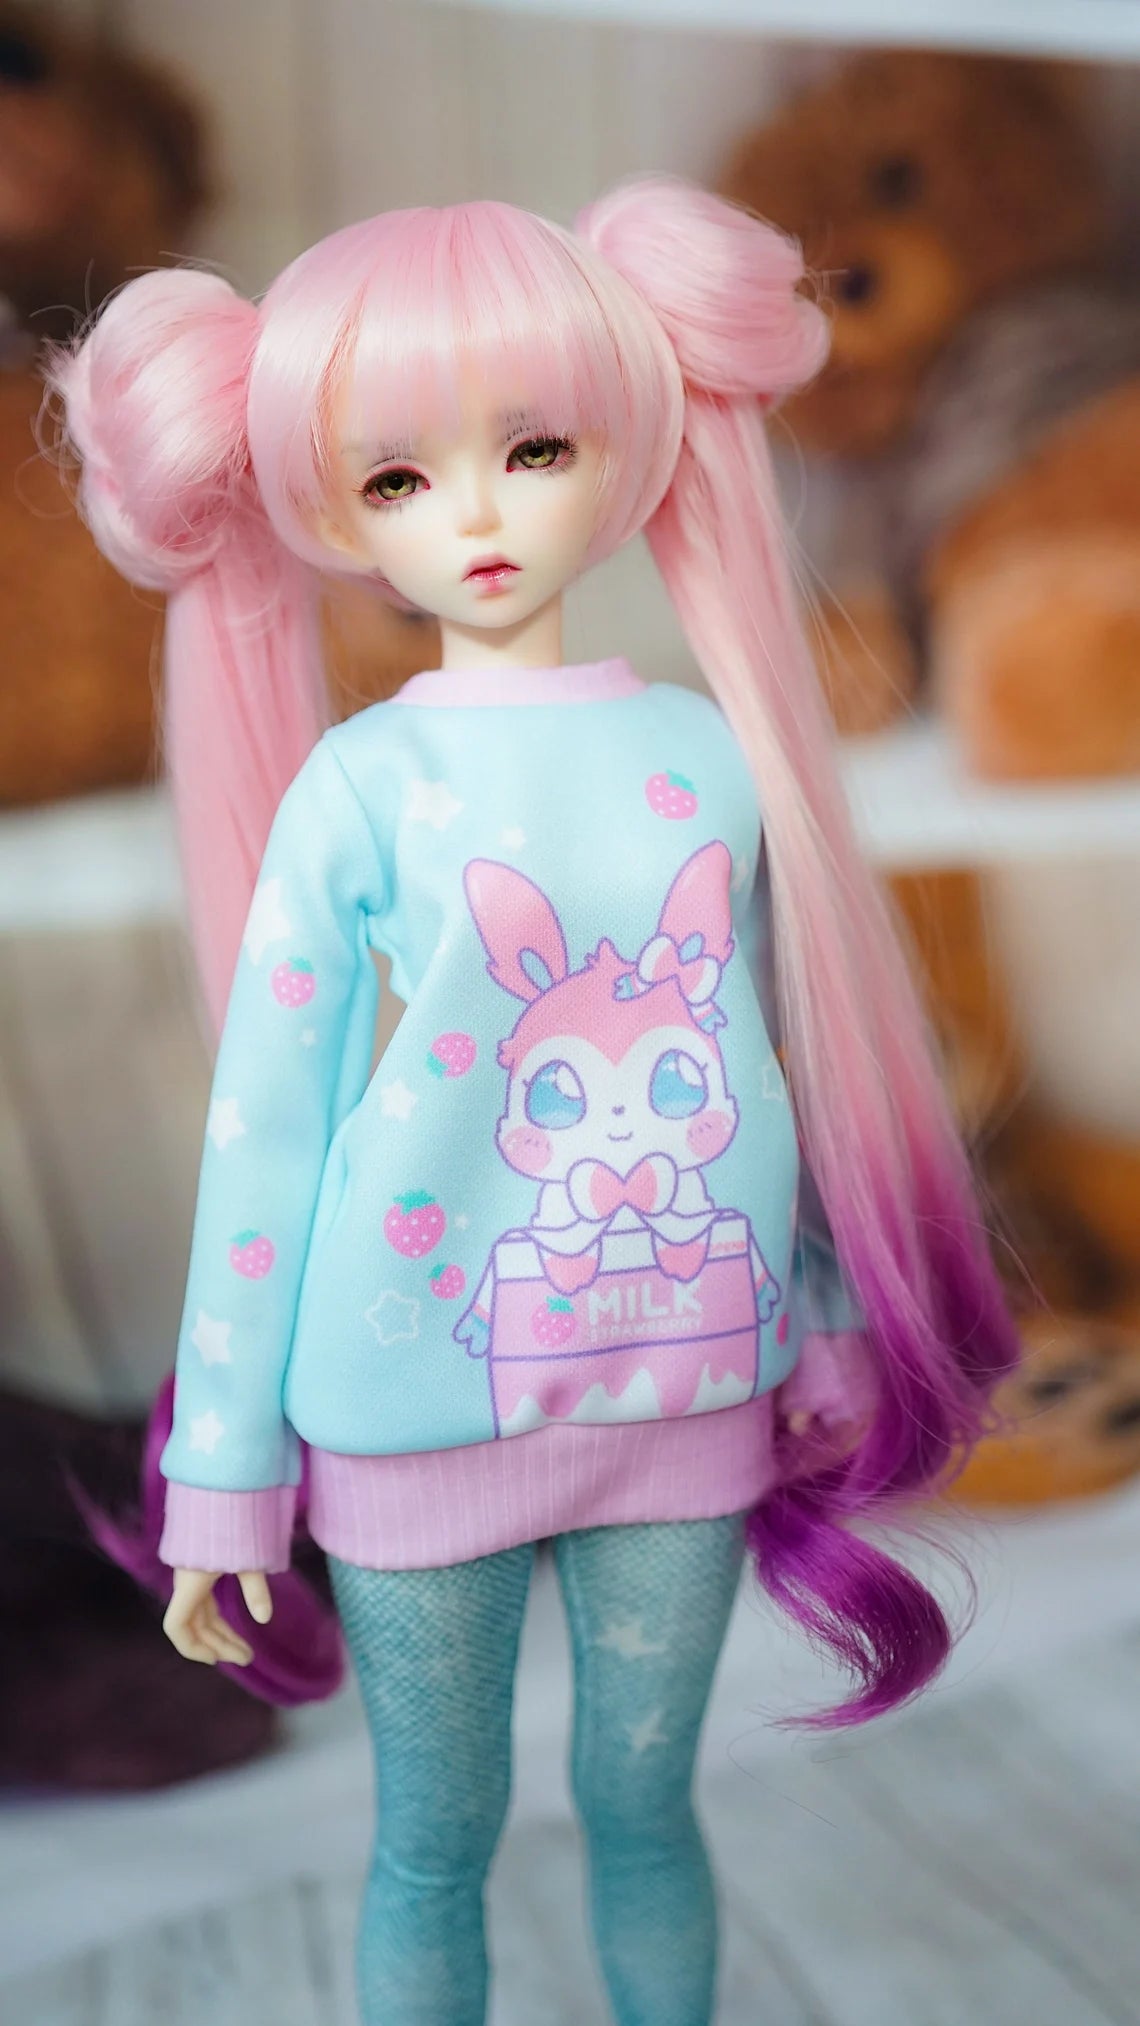 Custom doll Wig for Minifee 1/4 BJD Dolls- "TAN CAPS" 6-7" head size of Bjd, msd, Boneka ,Fairyland Minifee dolls Removeable buns Limited